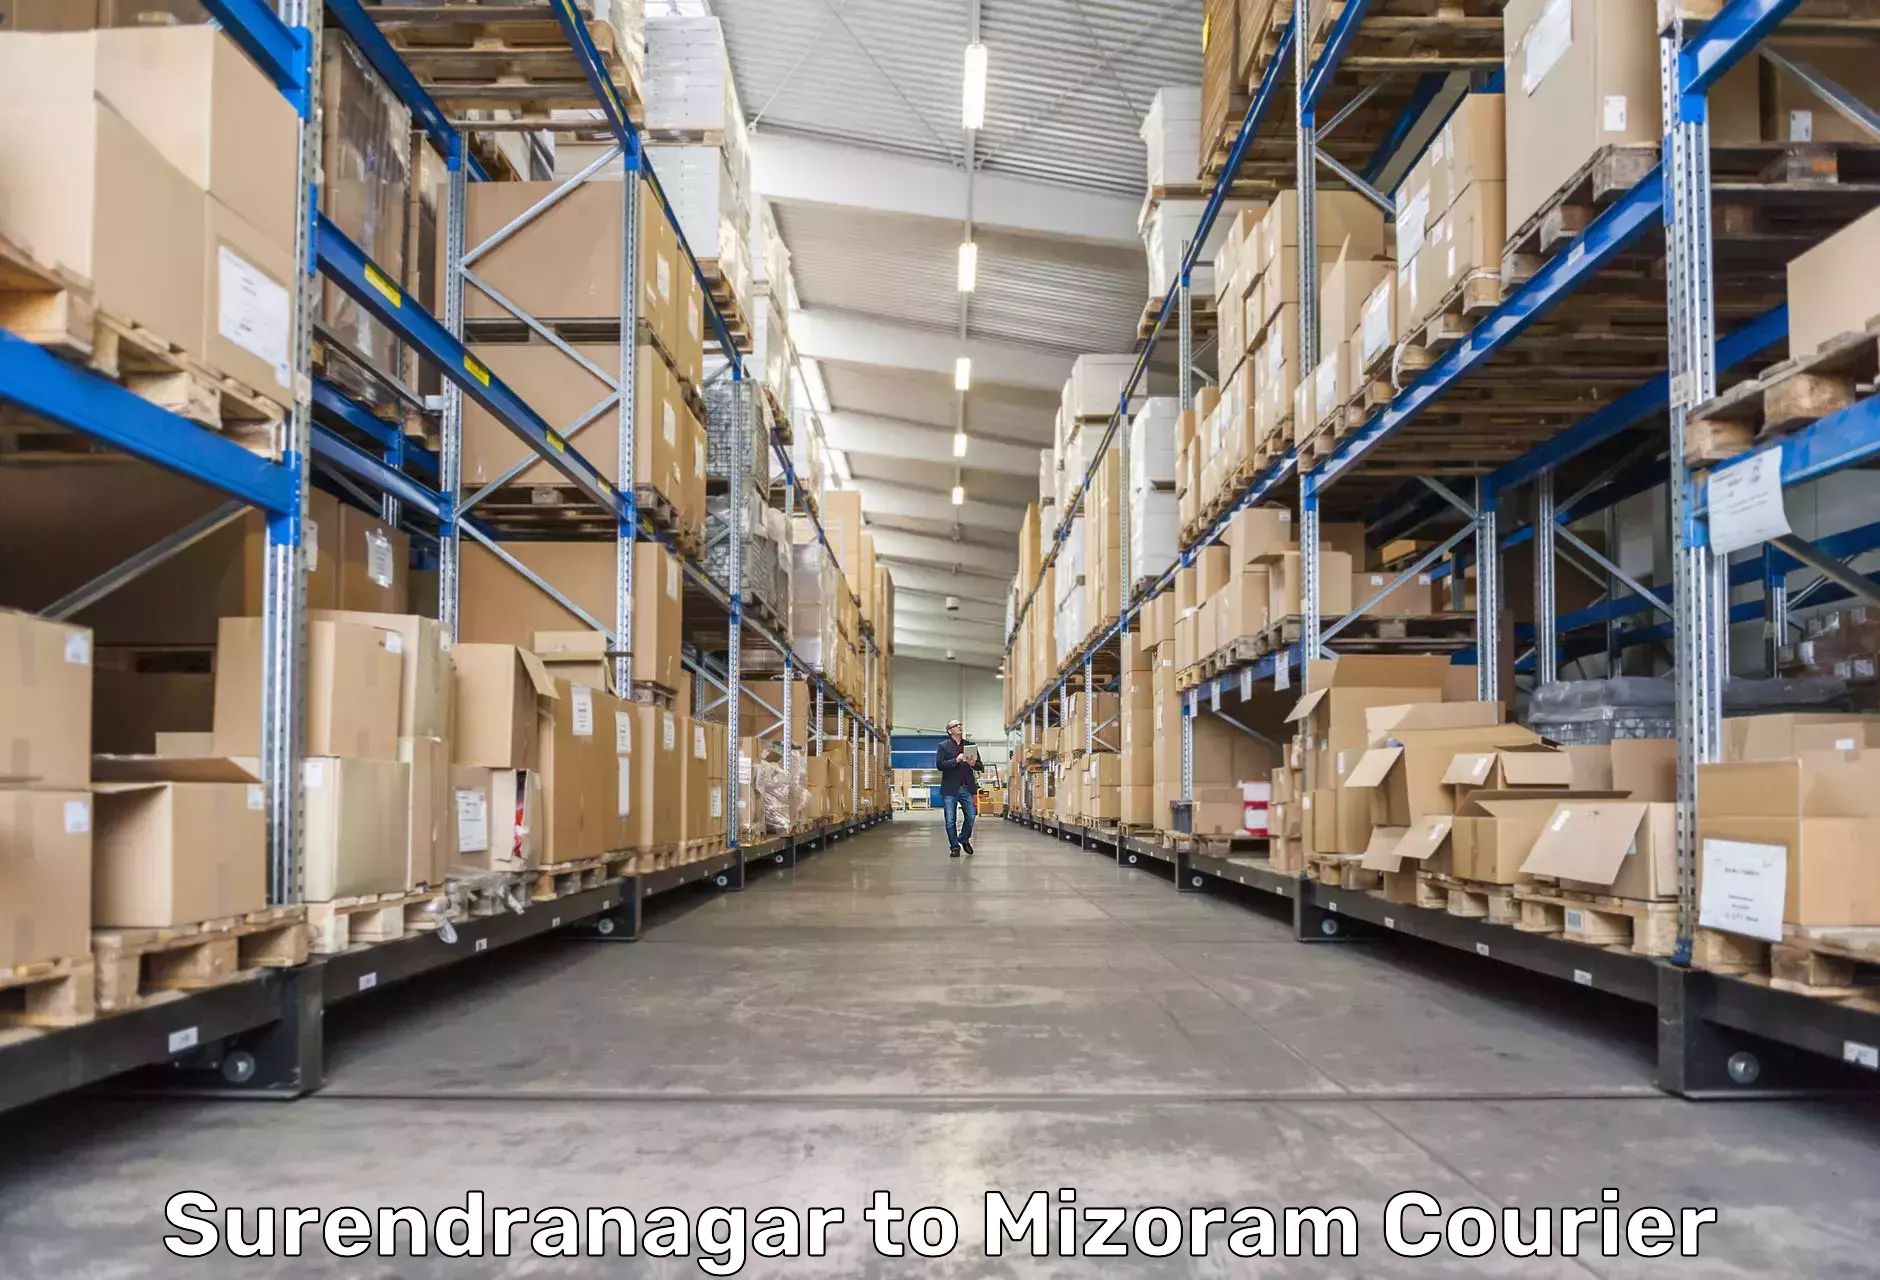 High-capacity shipping options Surendranagar to Darlawn